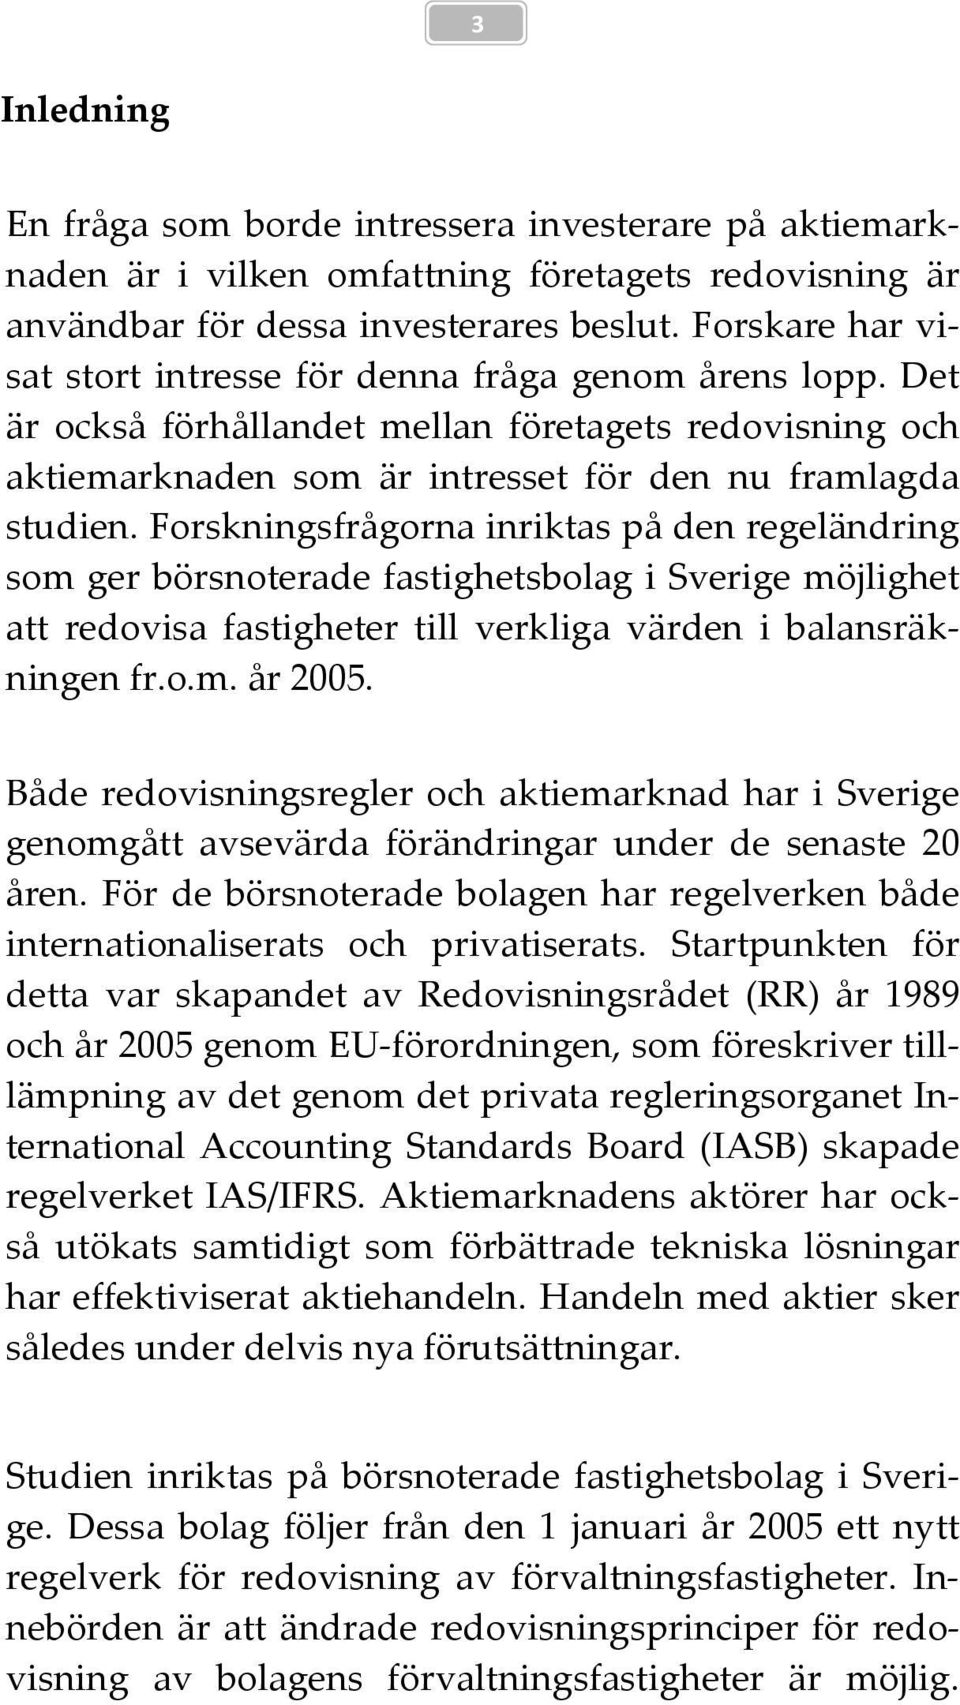 Forskningsfrågorna inriktas på den regeländring som ger börsnoterade fastighetsbolag i Sverige möjlighet att redovisa fastigheter till verkliga värden i balansräkningen fr.o.m. år 2005.